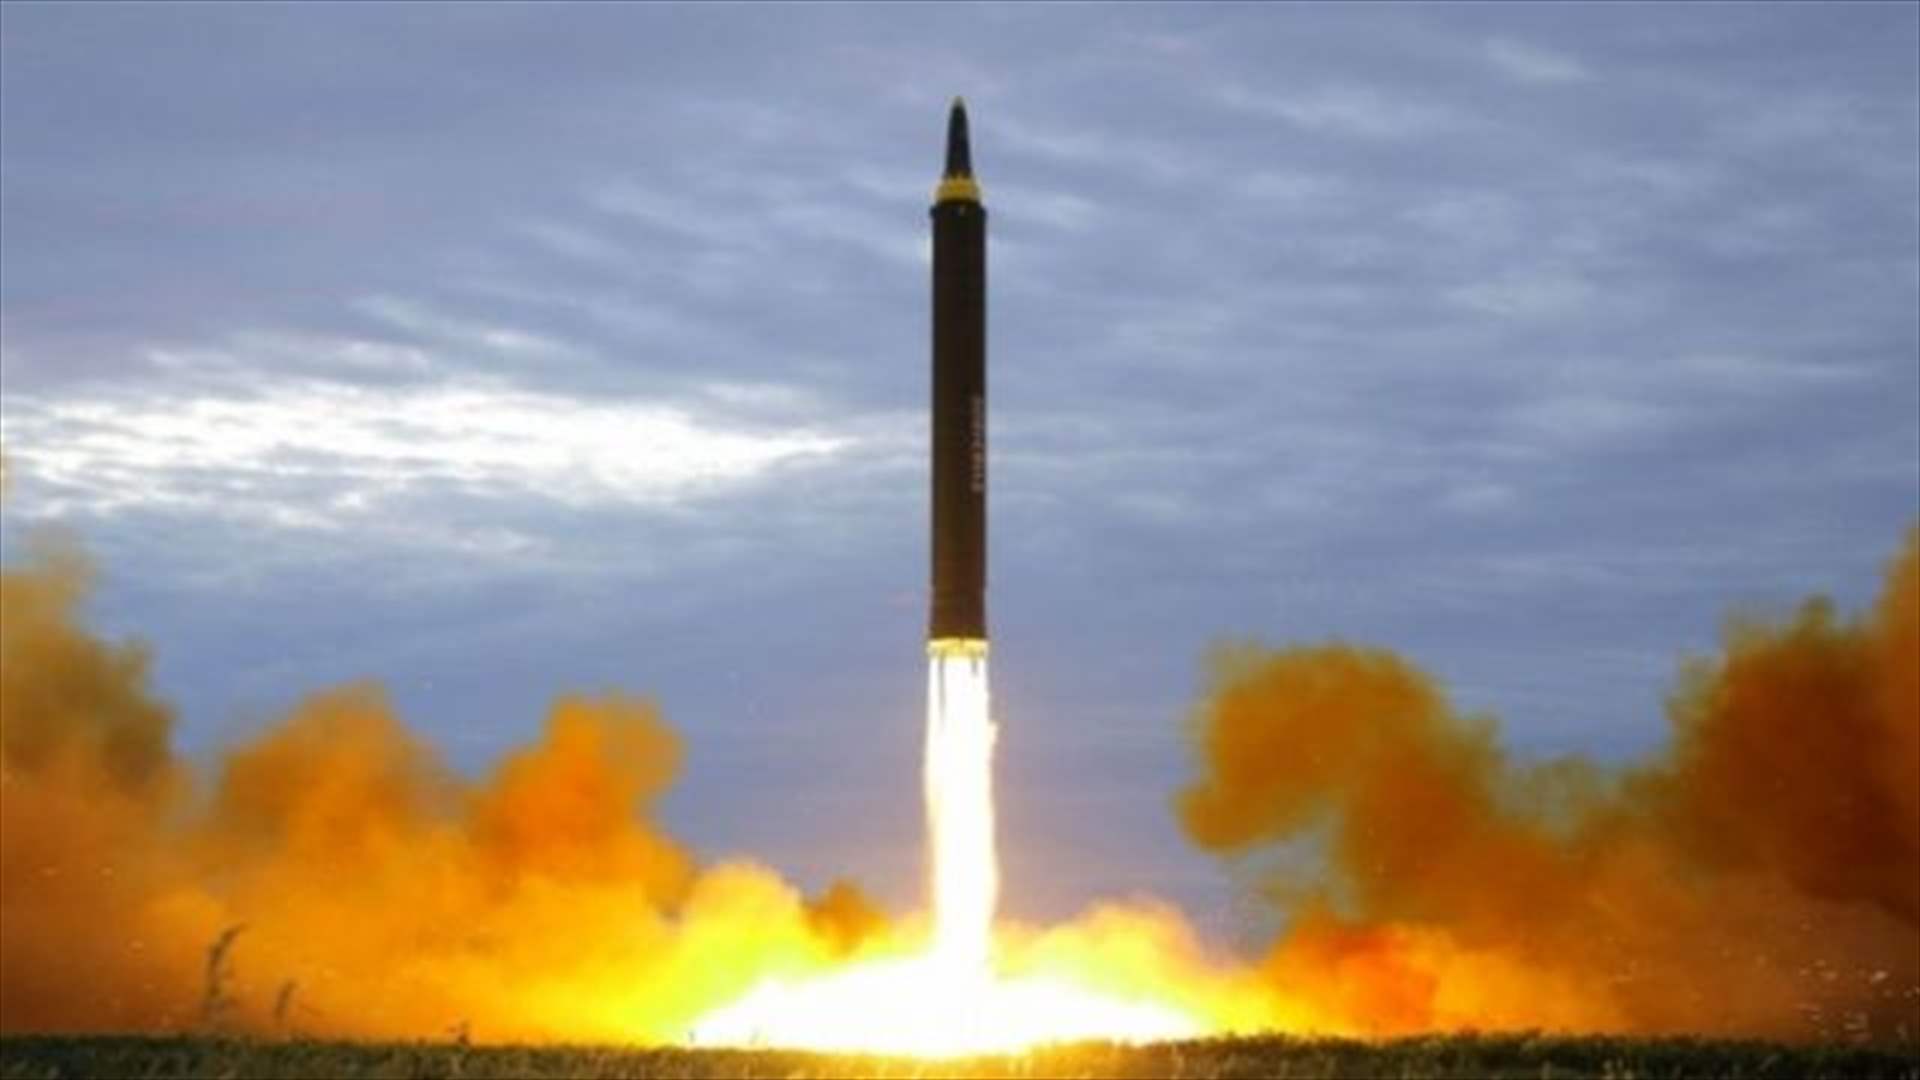 كوريا الشمالية تطلق صاروخا يشتبه بأنه بالستي بعيد المدى